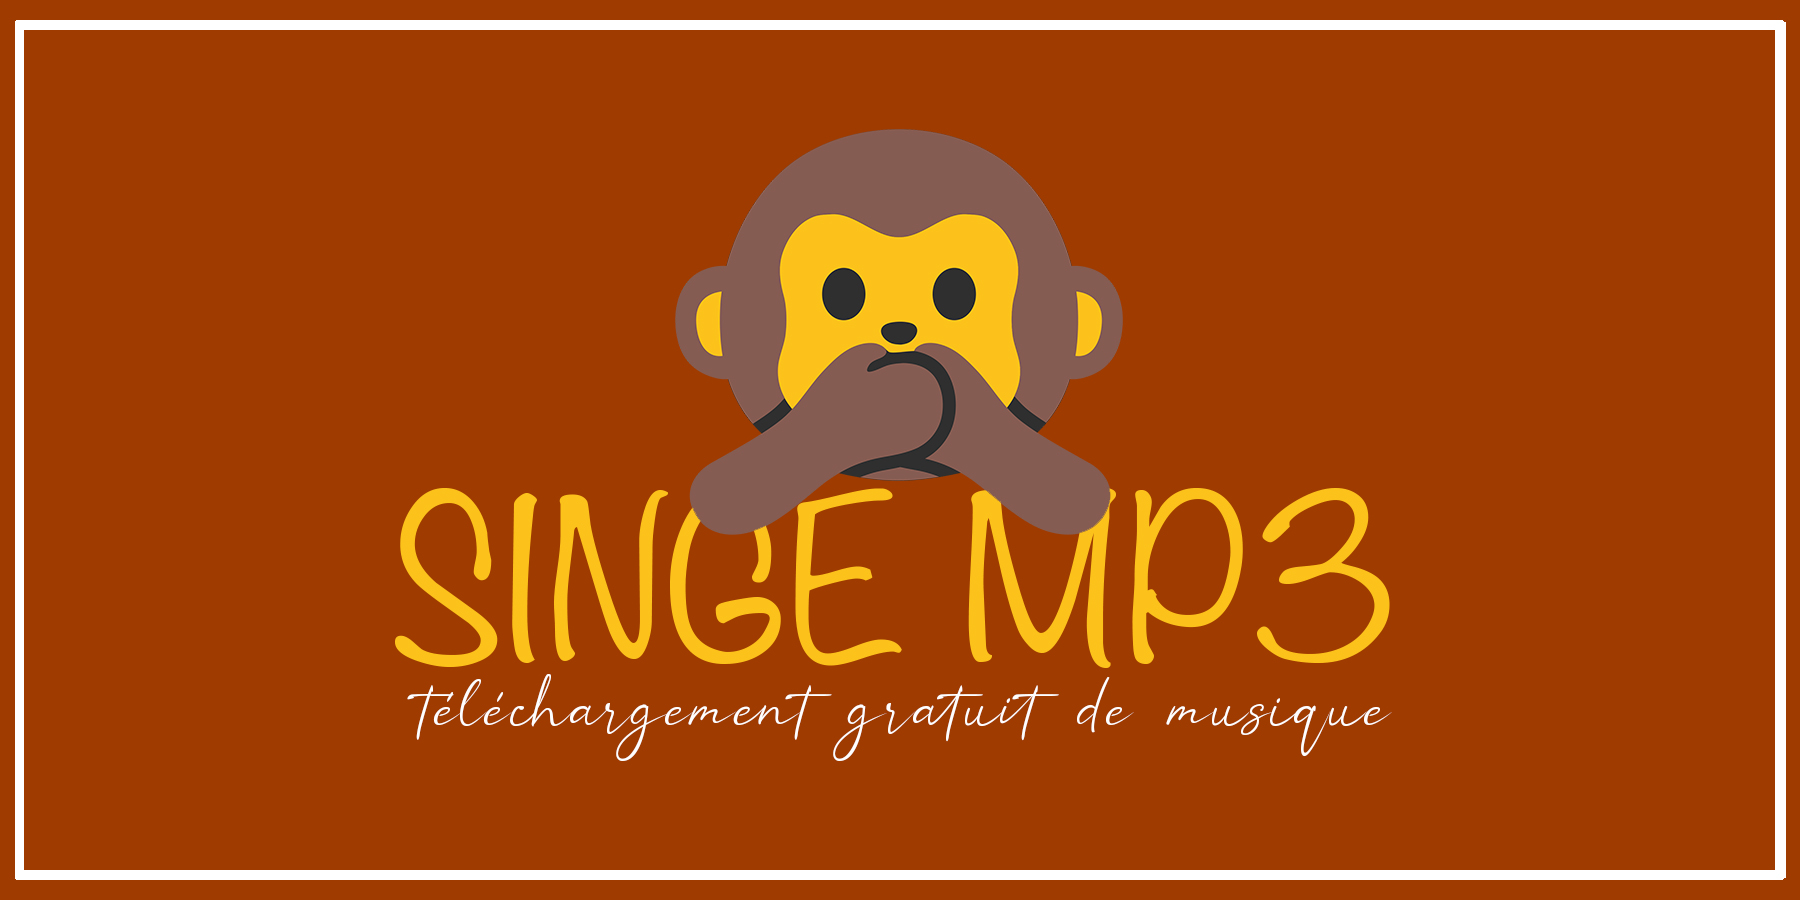 Monkey MP3. Նոր հասցե MP3 երաժշտություն անվճար ներբեռնելու համար